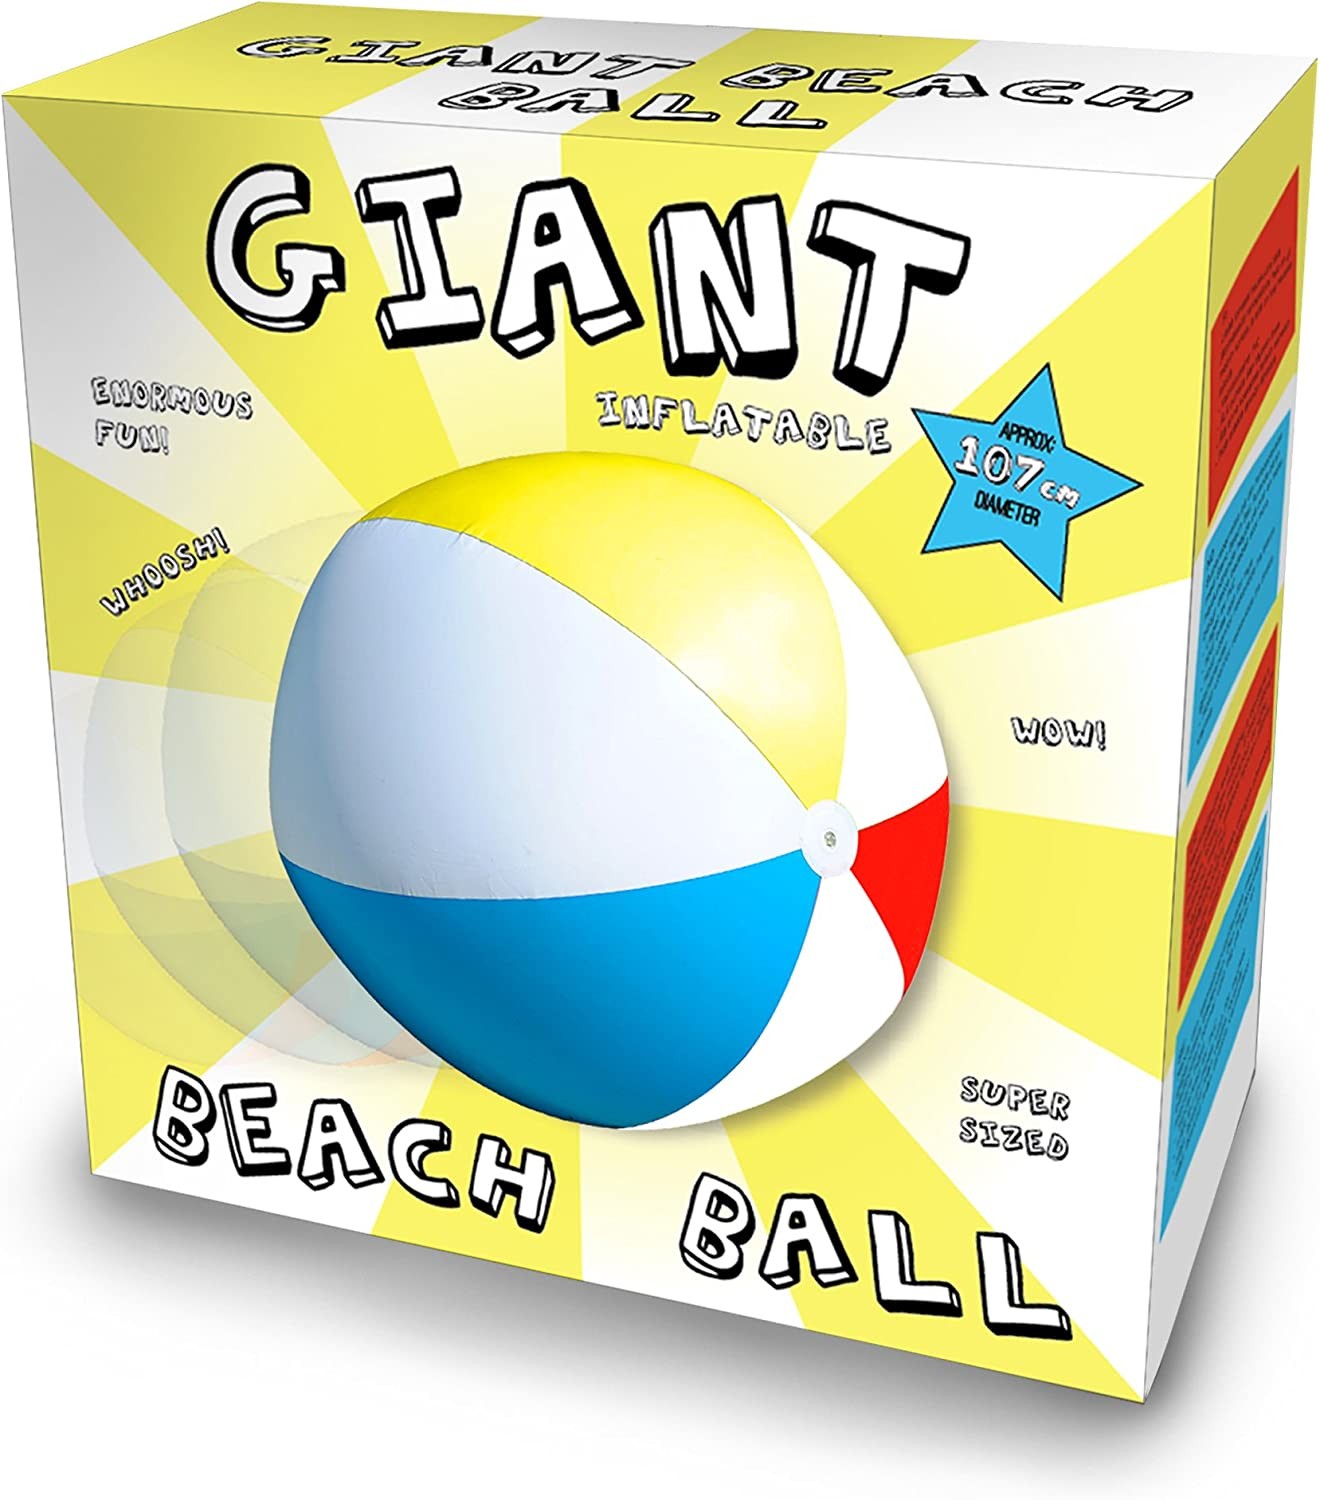 Grand ballon de plage gonflable 1,4 mètre de couleurs gonflées rouge / Wit/  Blauw